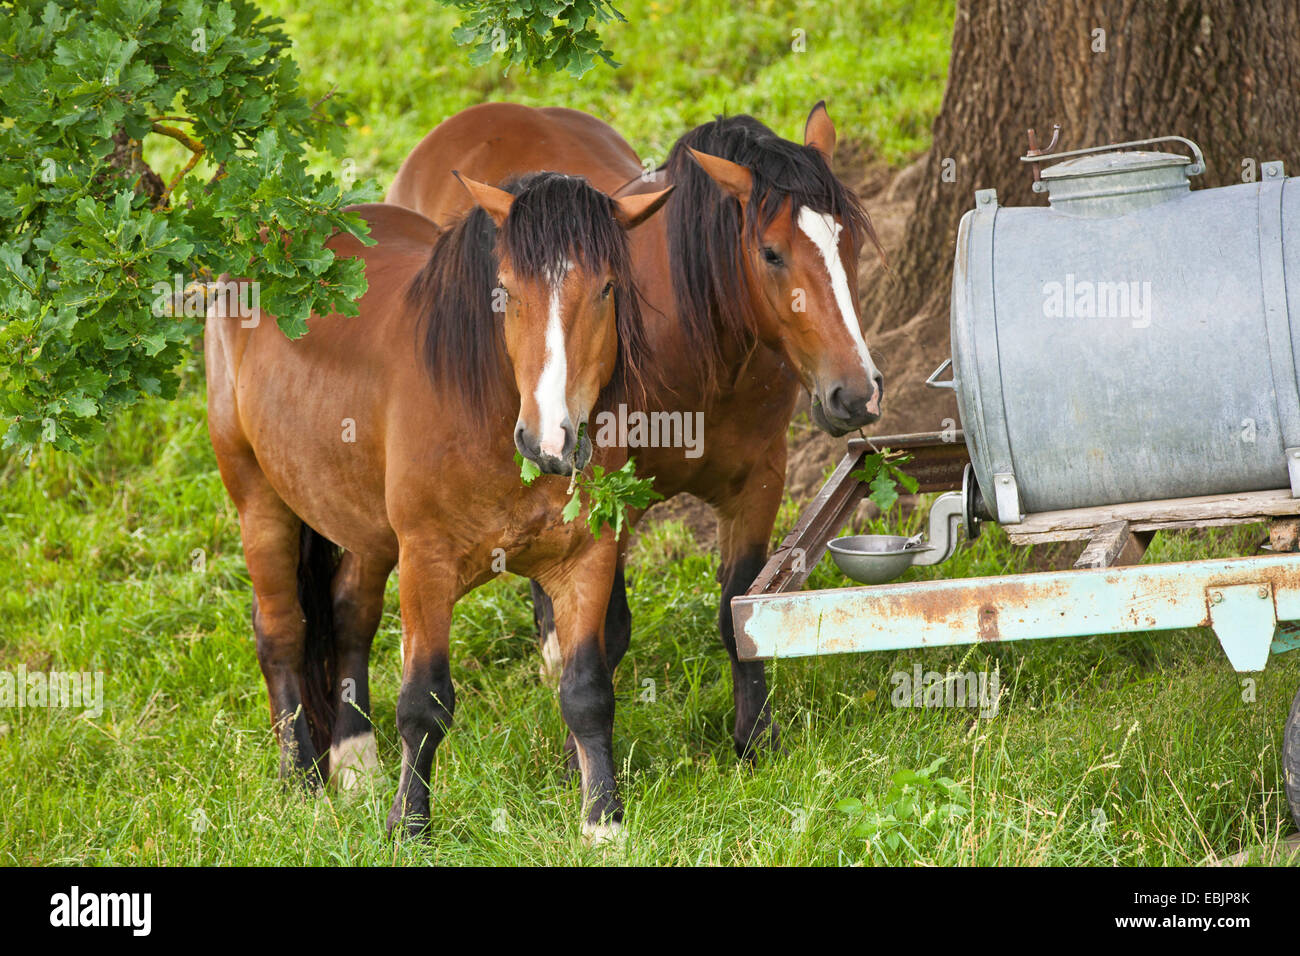 Cheval domestique (Equus caballus przewalskii f.), à un horsetrough se nourrit de feuilles de chêne, l'Allemagne, la Bavière Banque D'Images